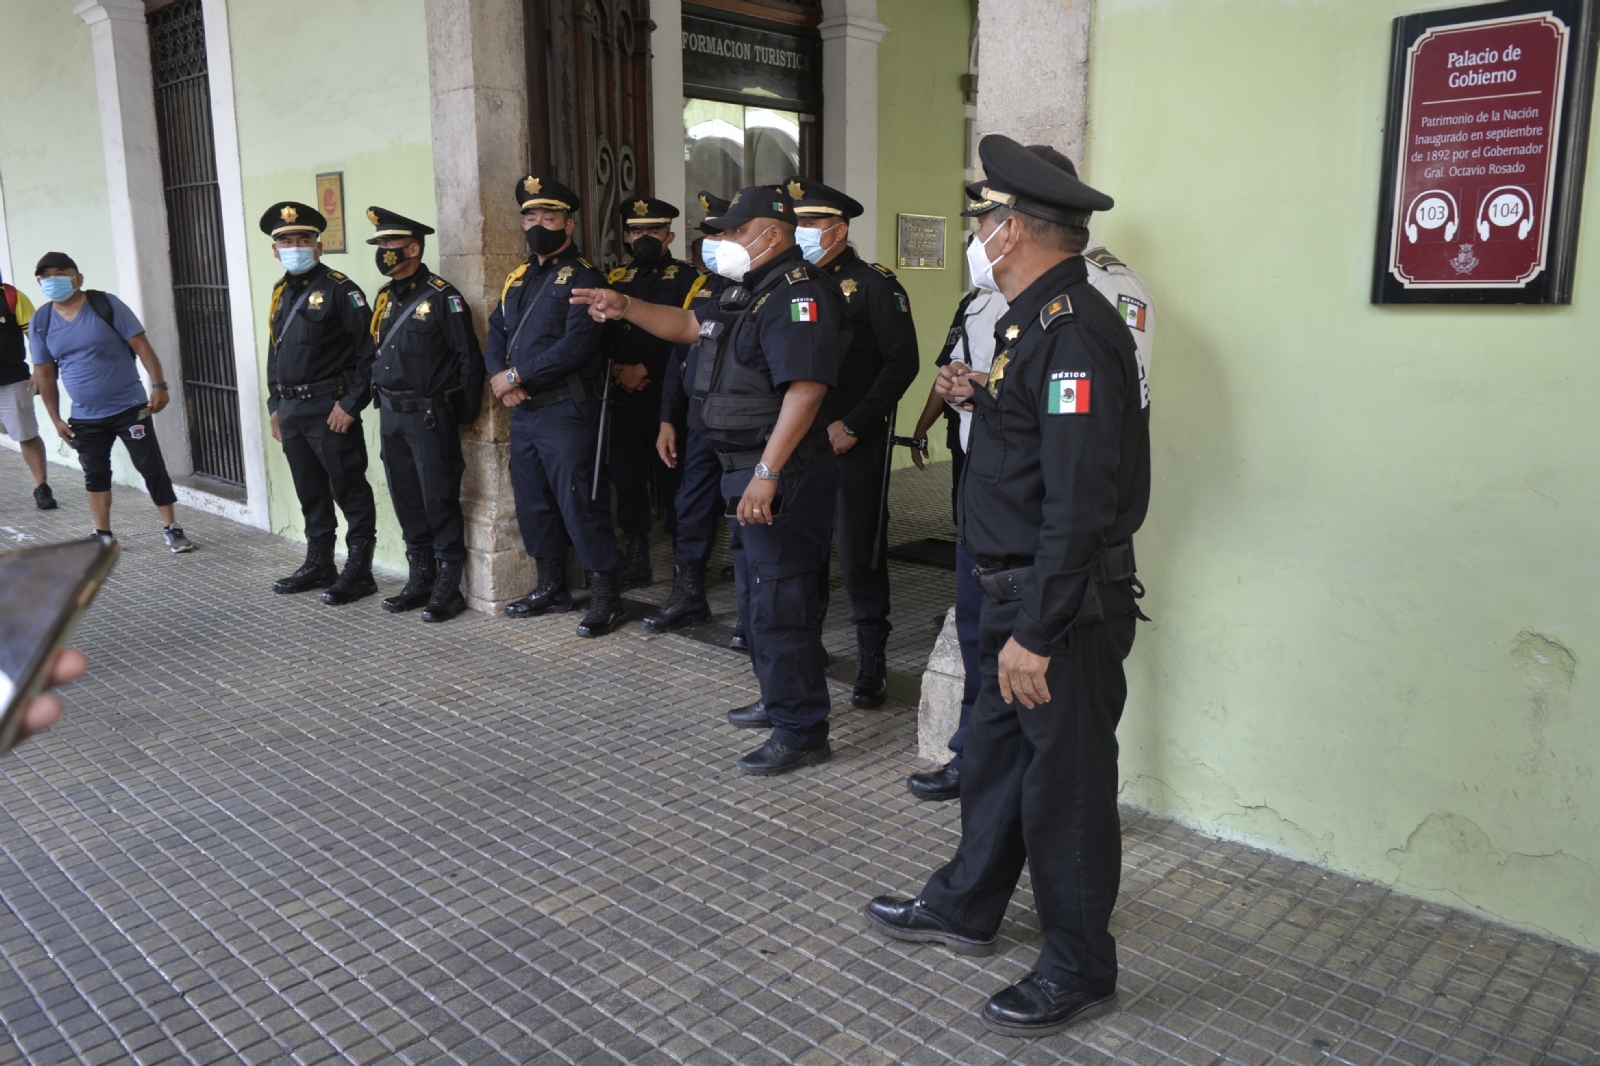 De 400 policías en Mérida, sólo 128 están certificados: Informe Sesnsp